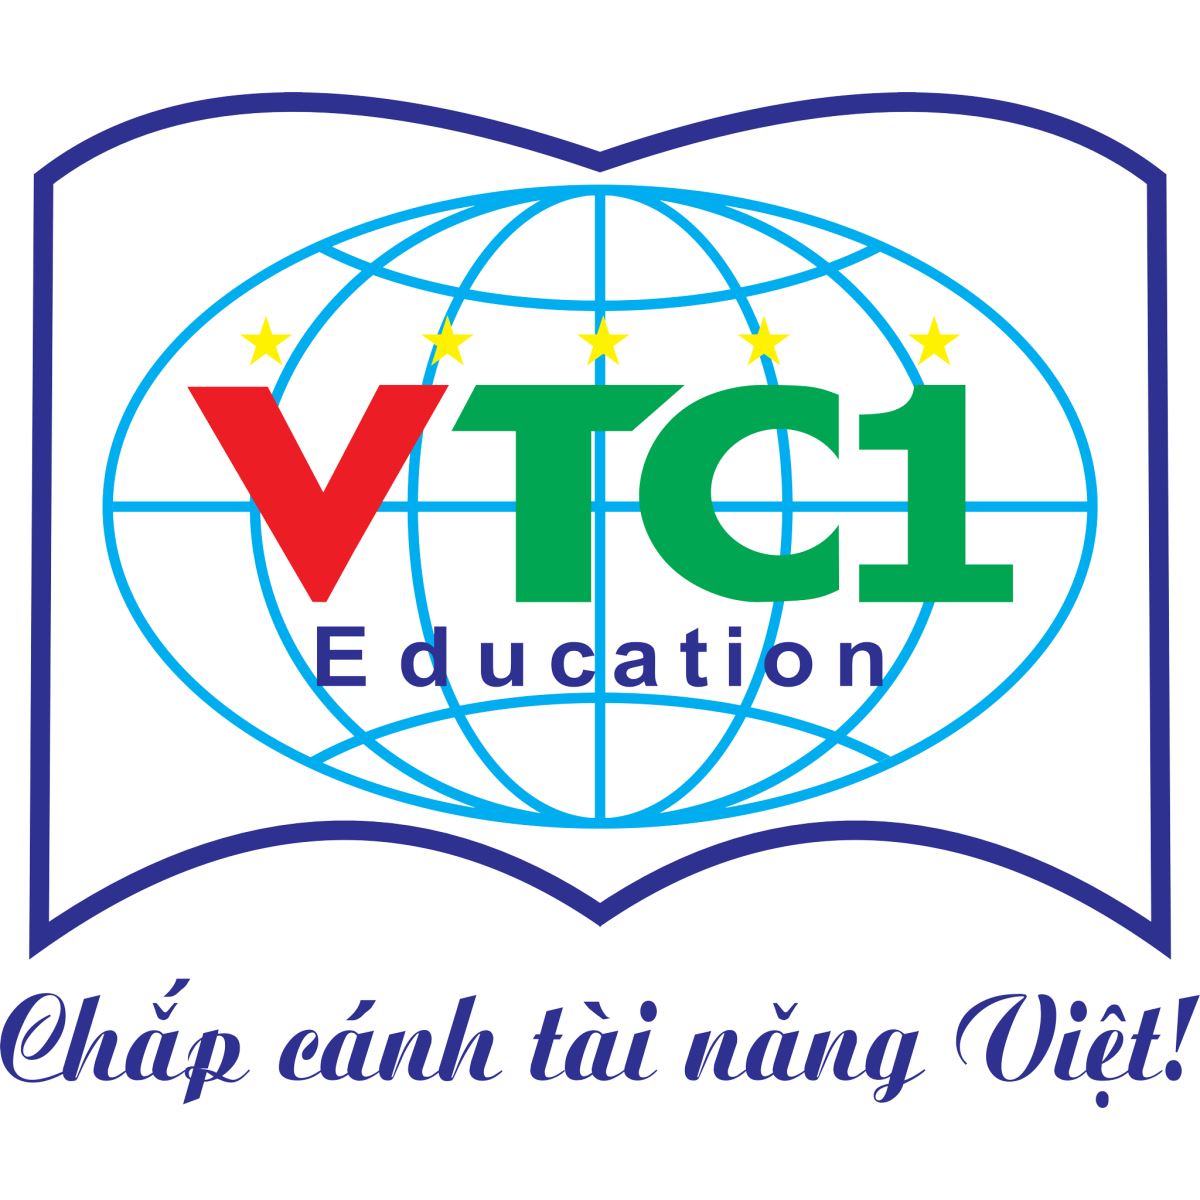 Giới thiệu về Du học VTC1